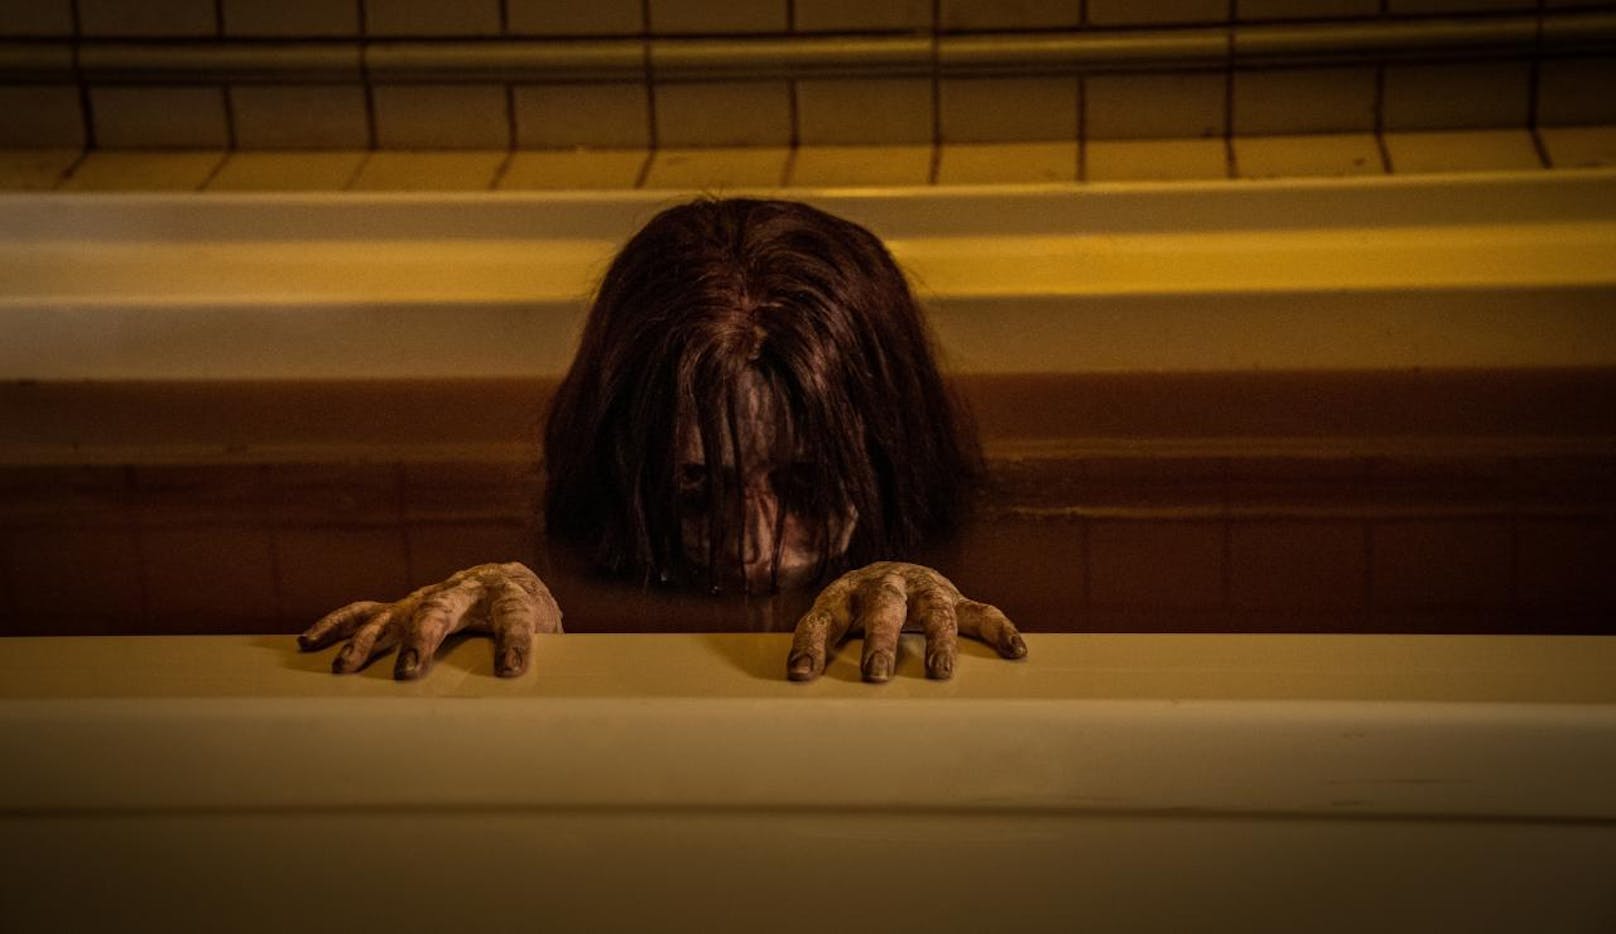 In "The Grudge" lauert der Tod in der Badewanne.